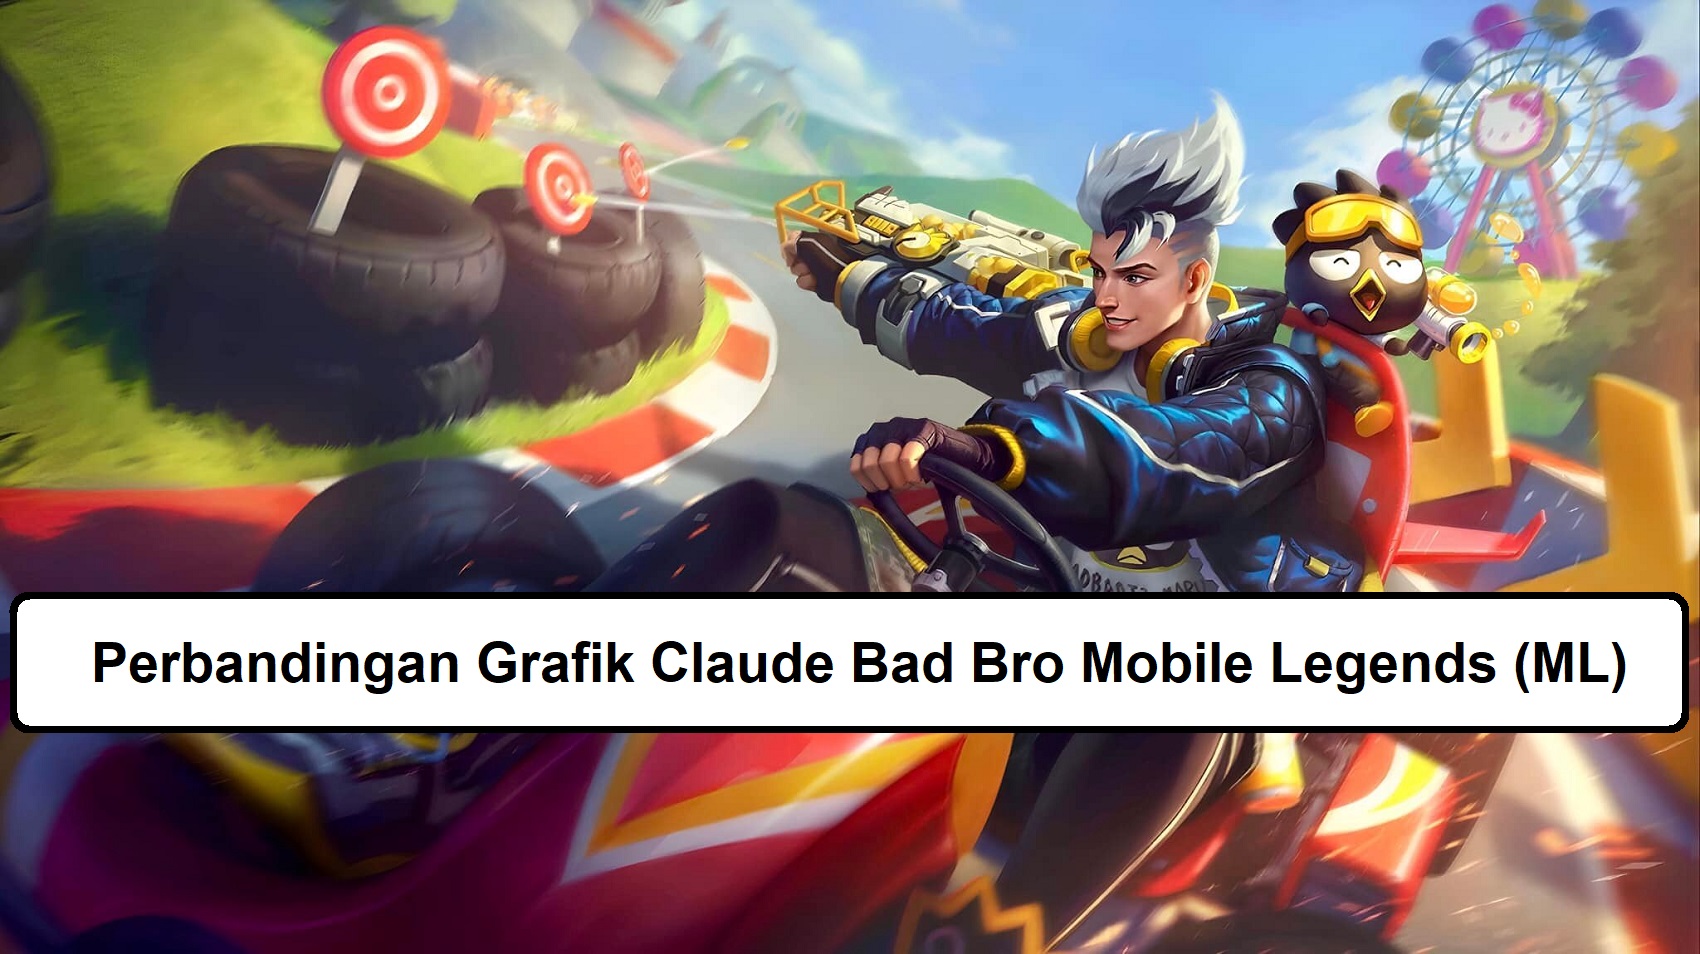 Perbandingan Grafik Skin Claude Bad Bro Mobile Legends (ML)